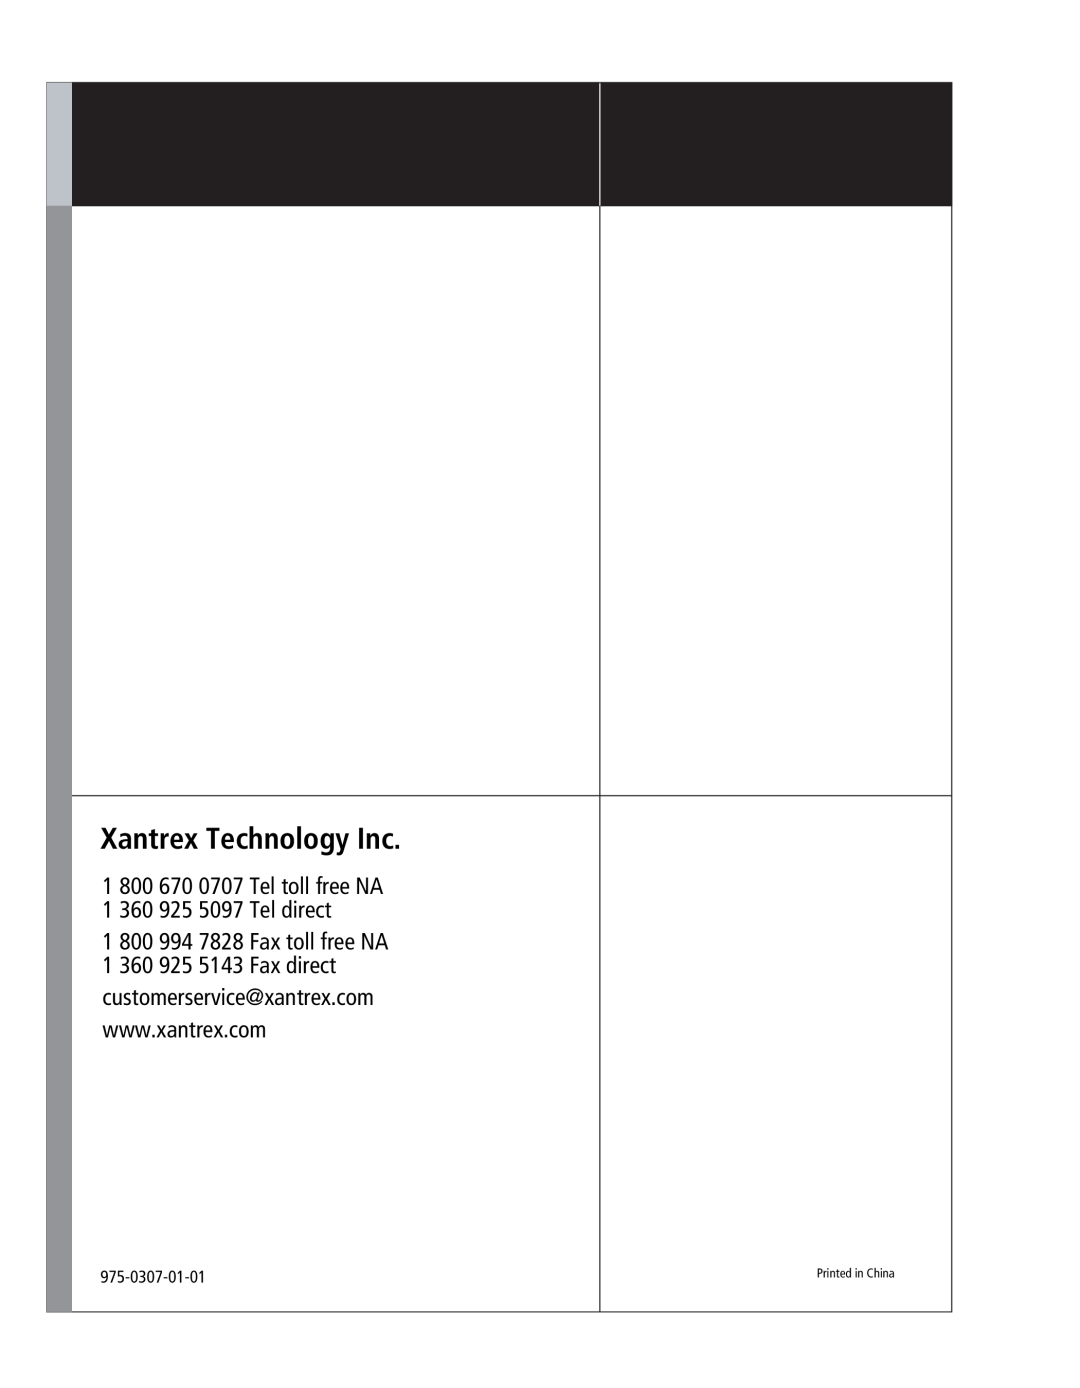 Xantrex Technology XW Xantrex Technology Inc, 1 800 670 0707 Tel toll free NA 1 360 925 5097 Tel direct, 975-0307-01-01 